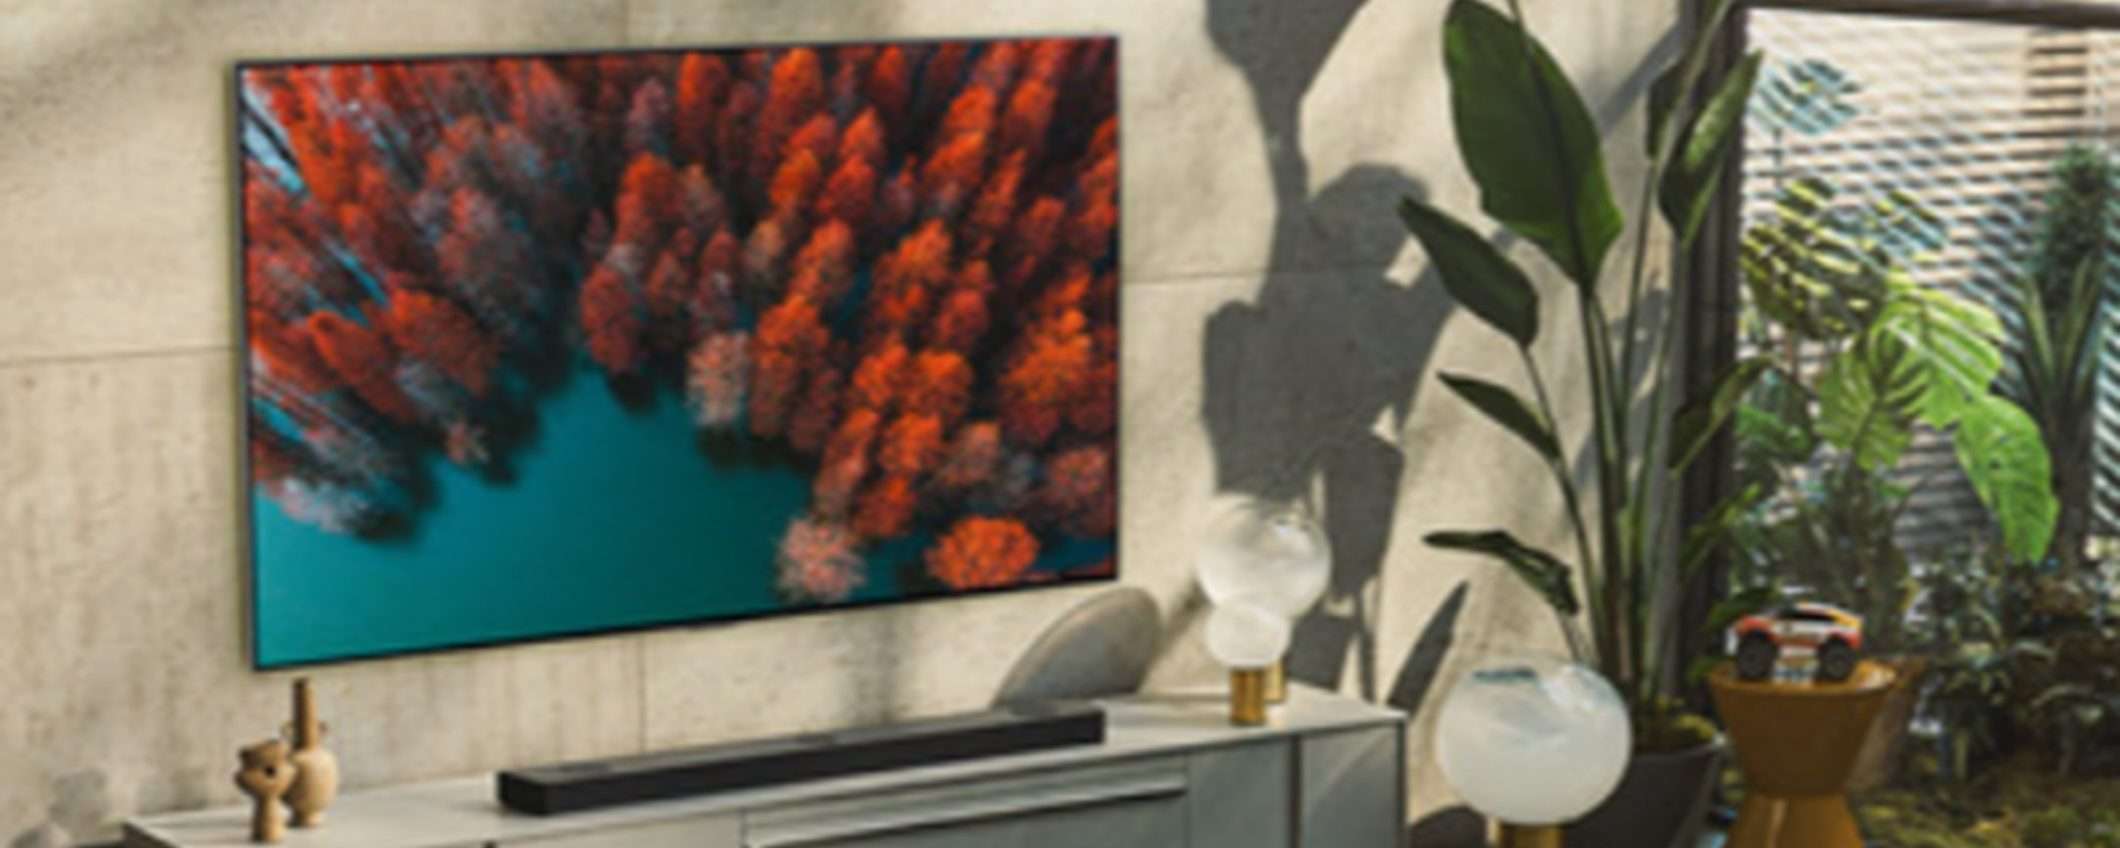 Smart TV LG OLED evo con piedistallo a 1 euro in super offerta a 998€ da Unieuro